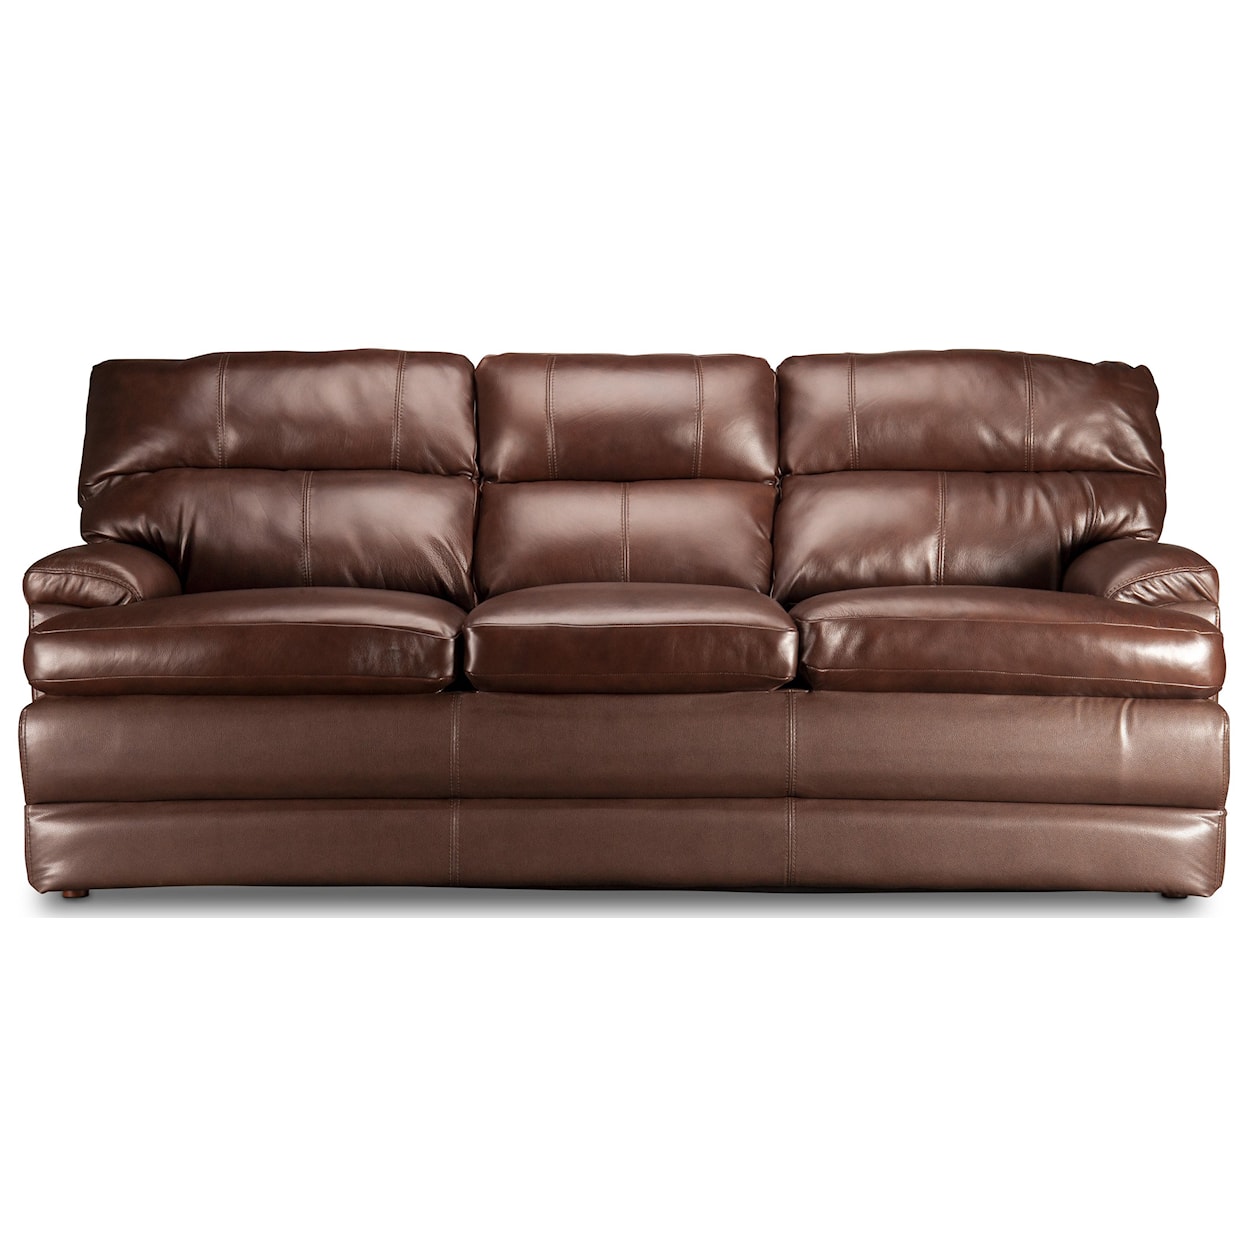 La-Z-Boy Miles Miles Top Grain Leather Match Sofa